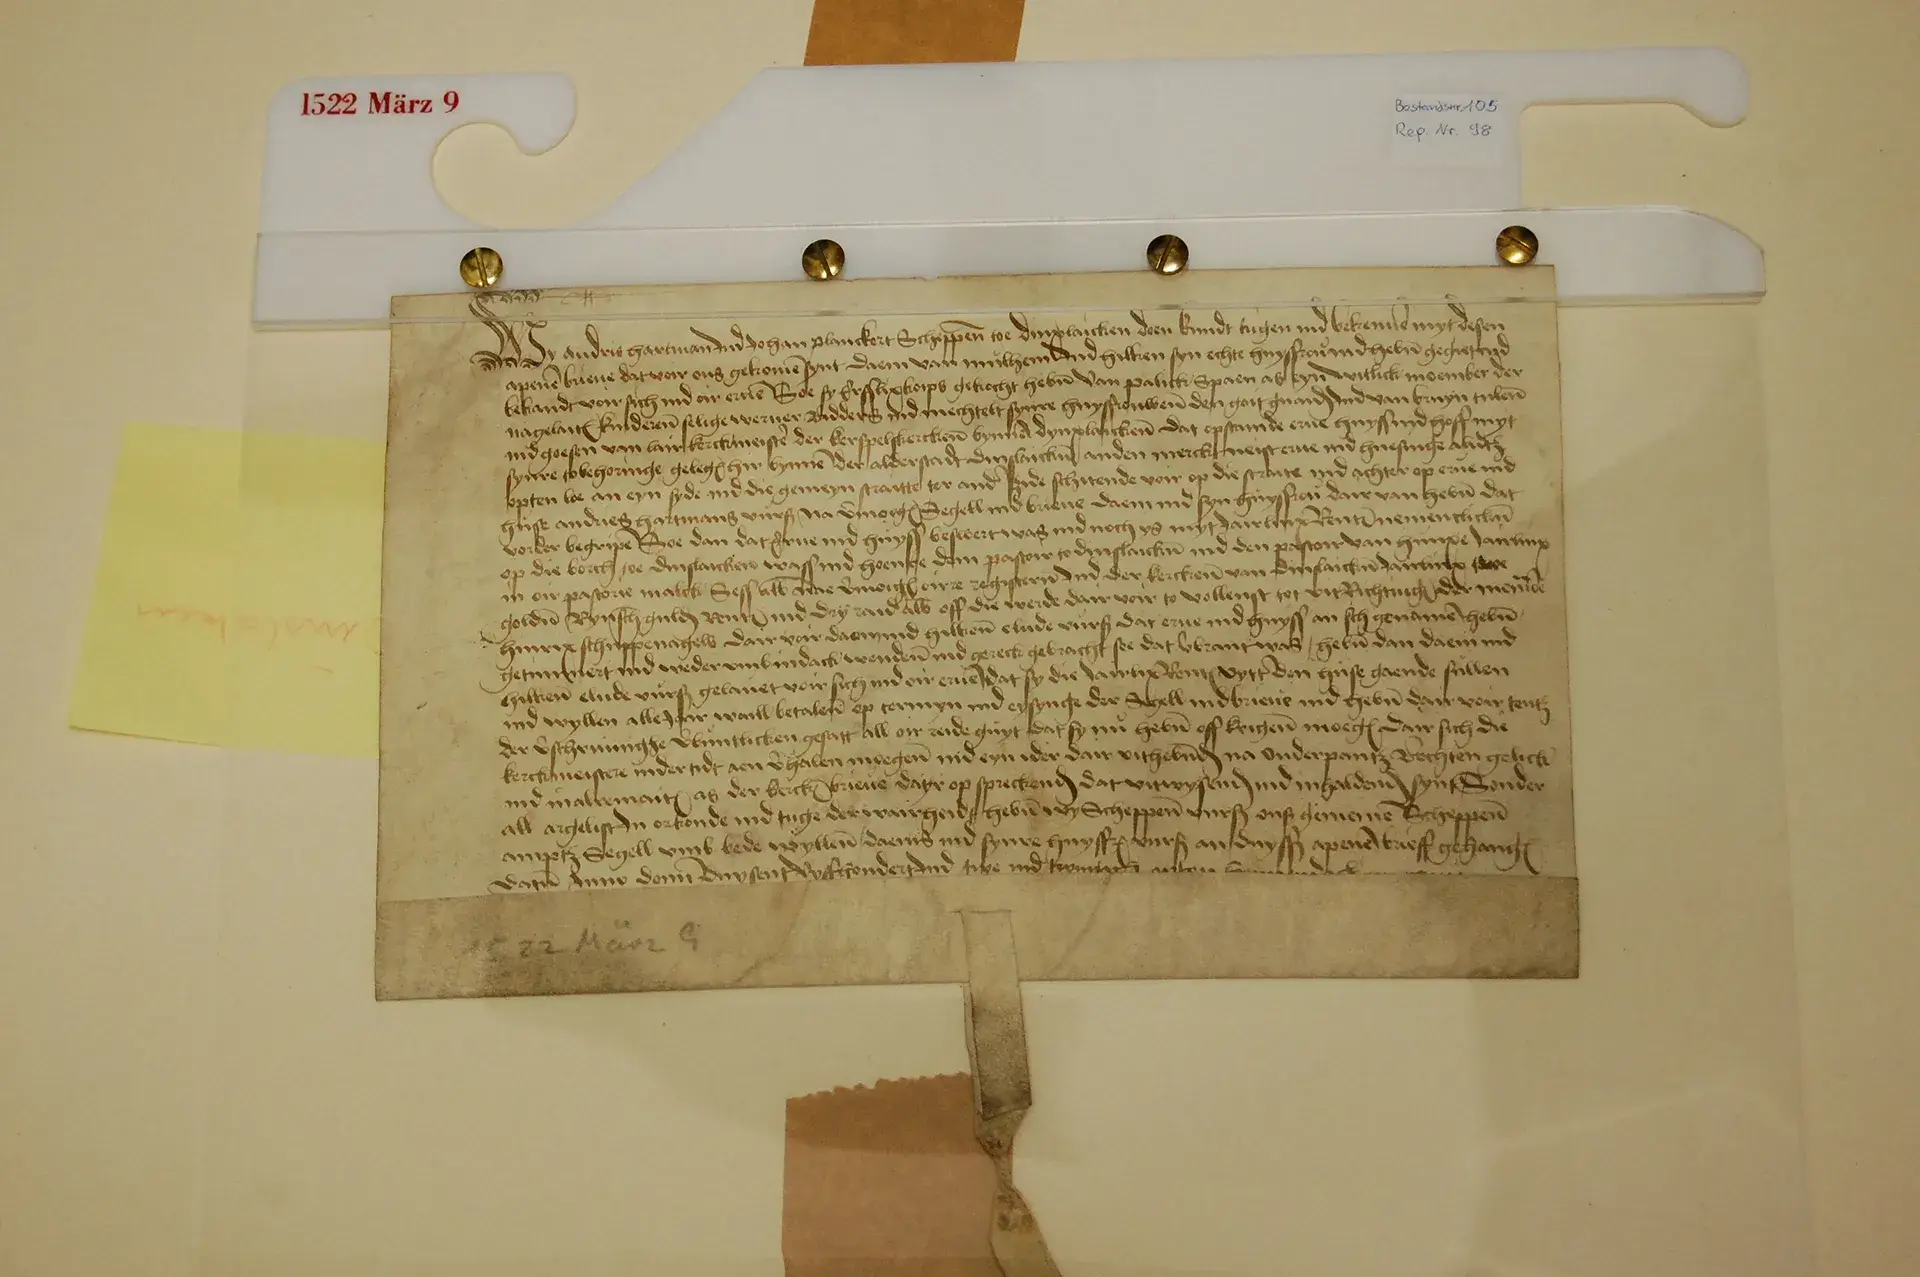 Urkunde 1 - restauriert - 9 März 1522